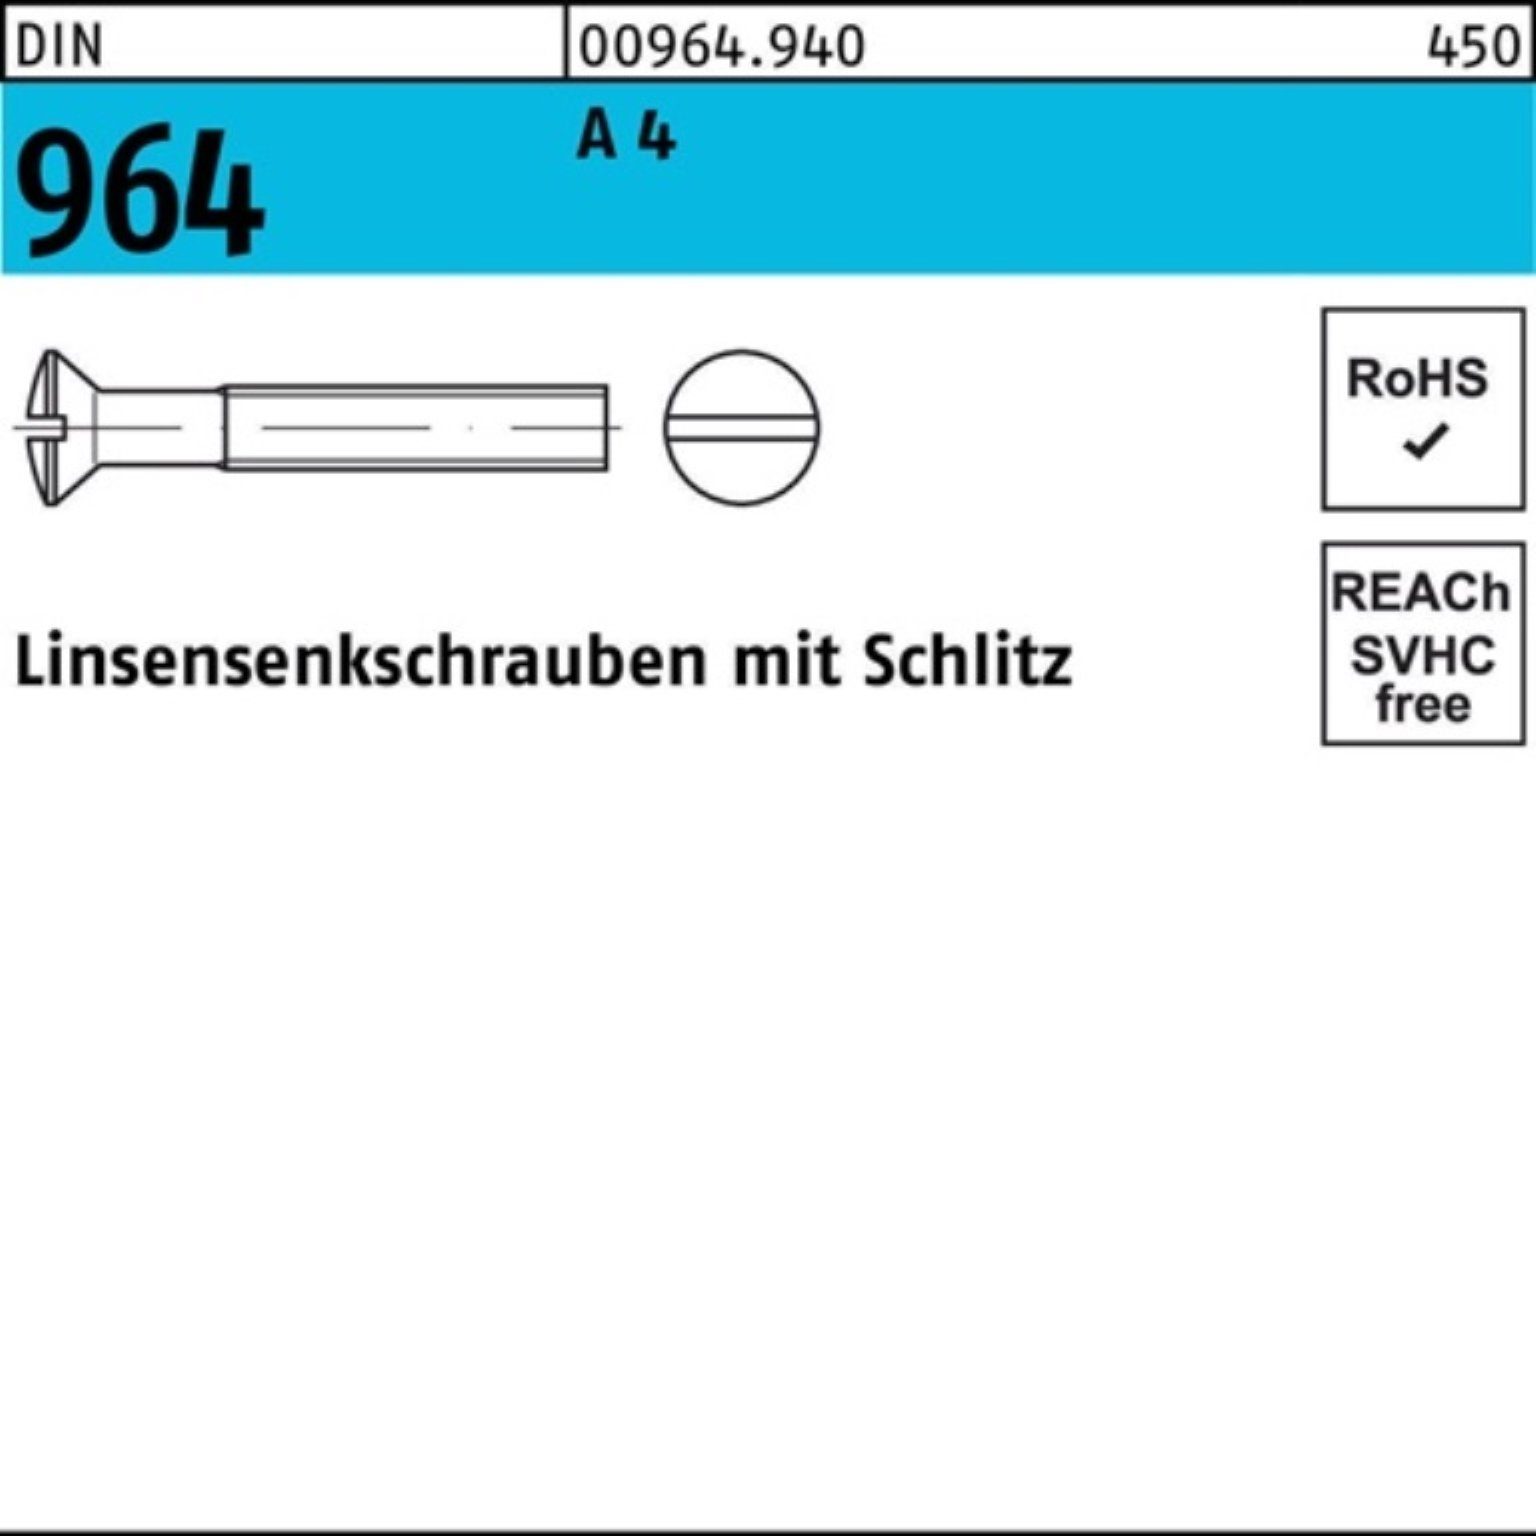 A M5x Schlitz DI 964 500er Pack DIN 4 16 Reyher Linsenschraube 500 Stück Linsensenkschraube